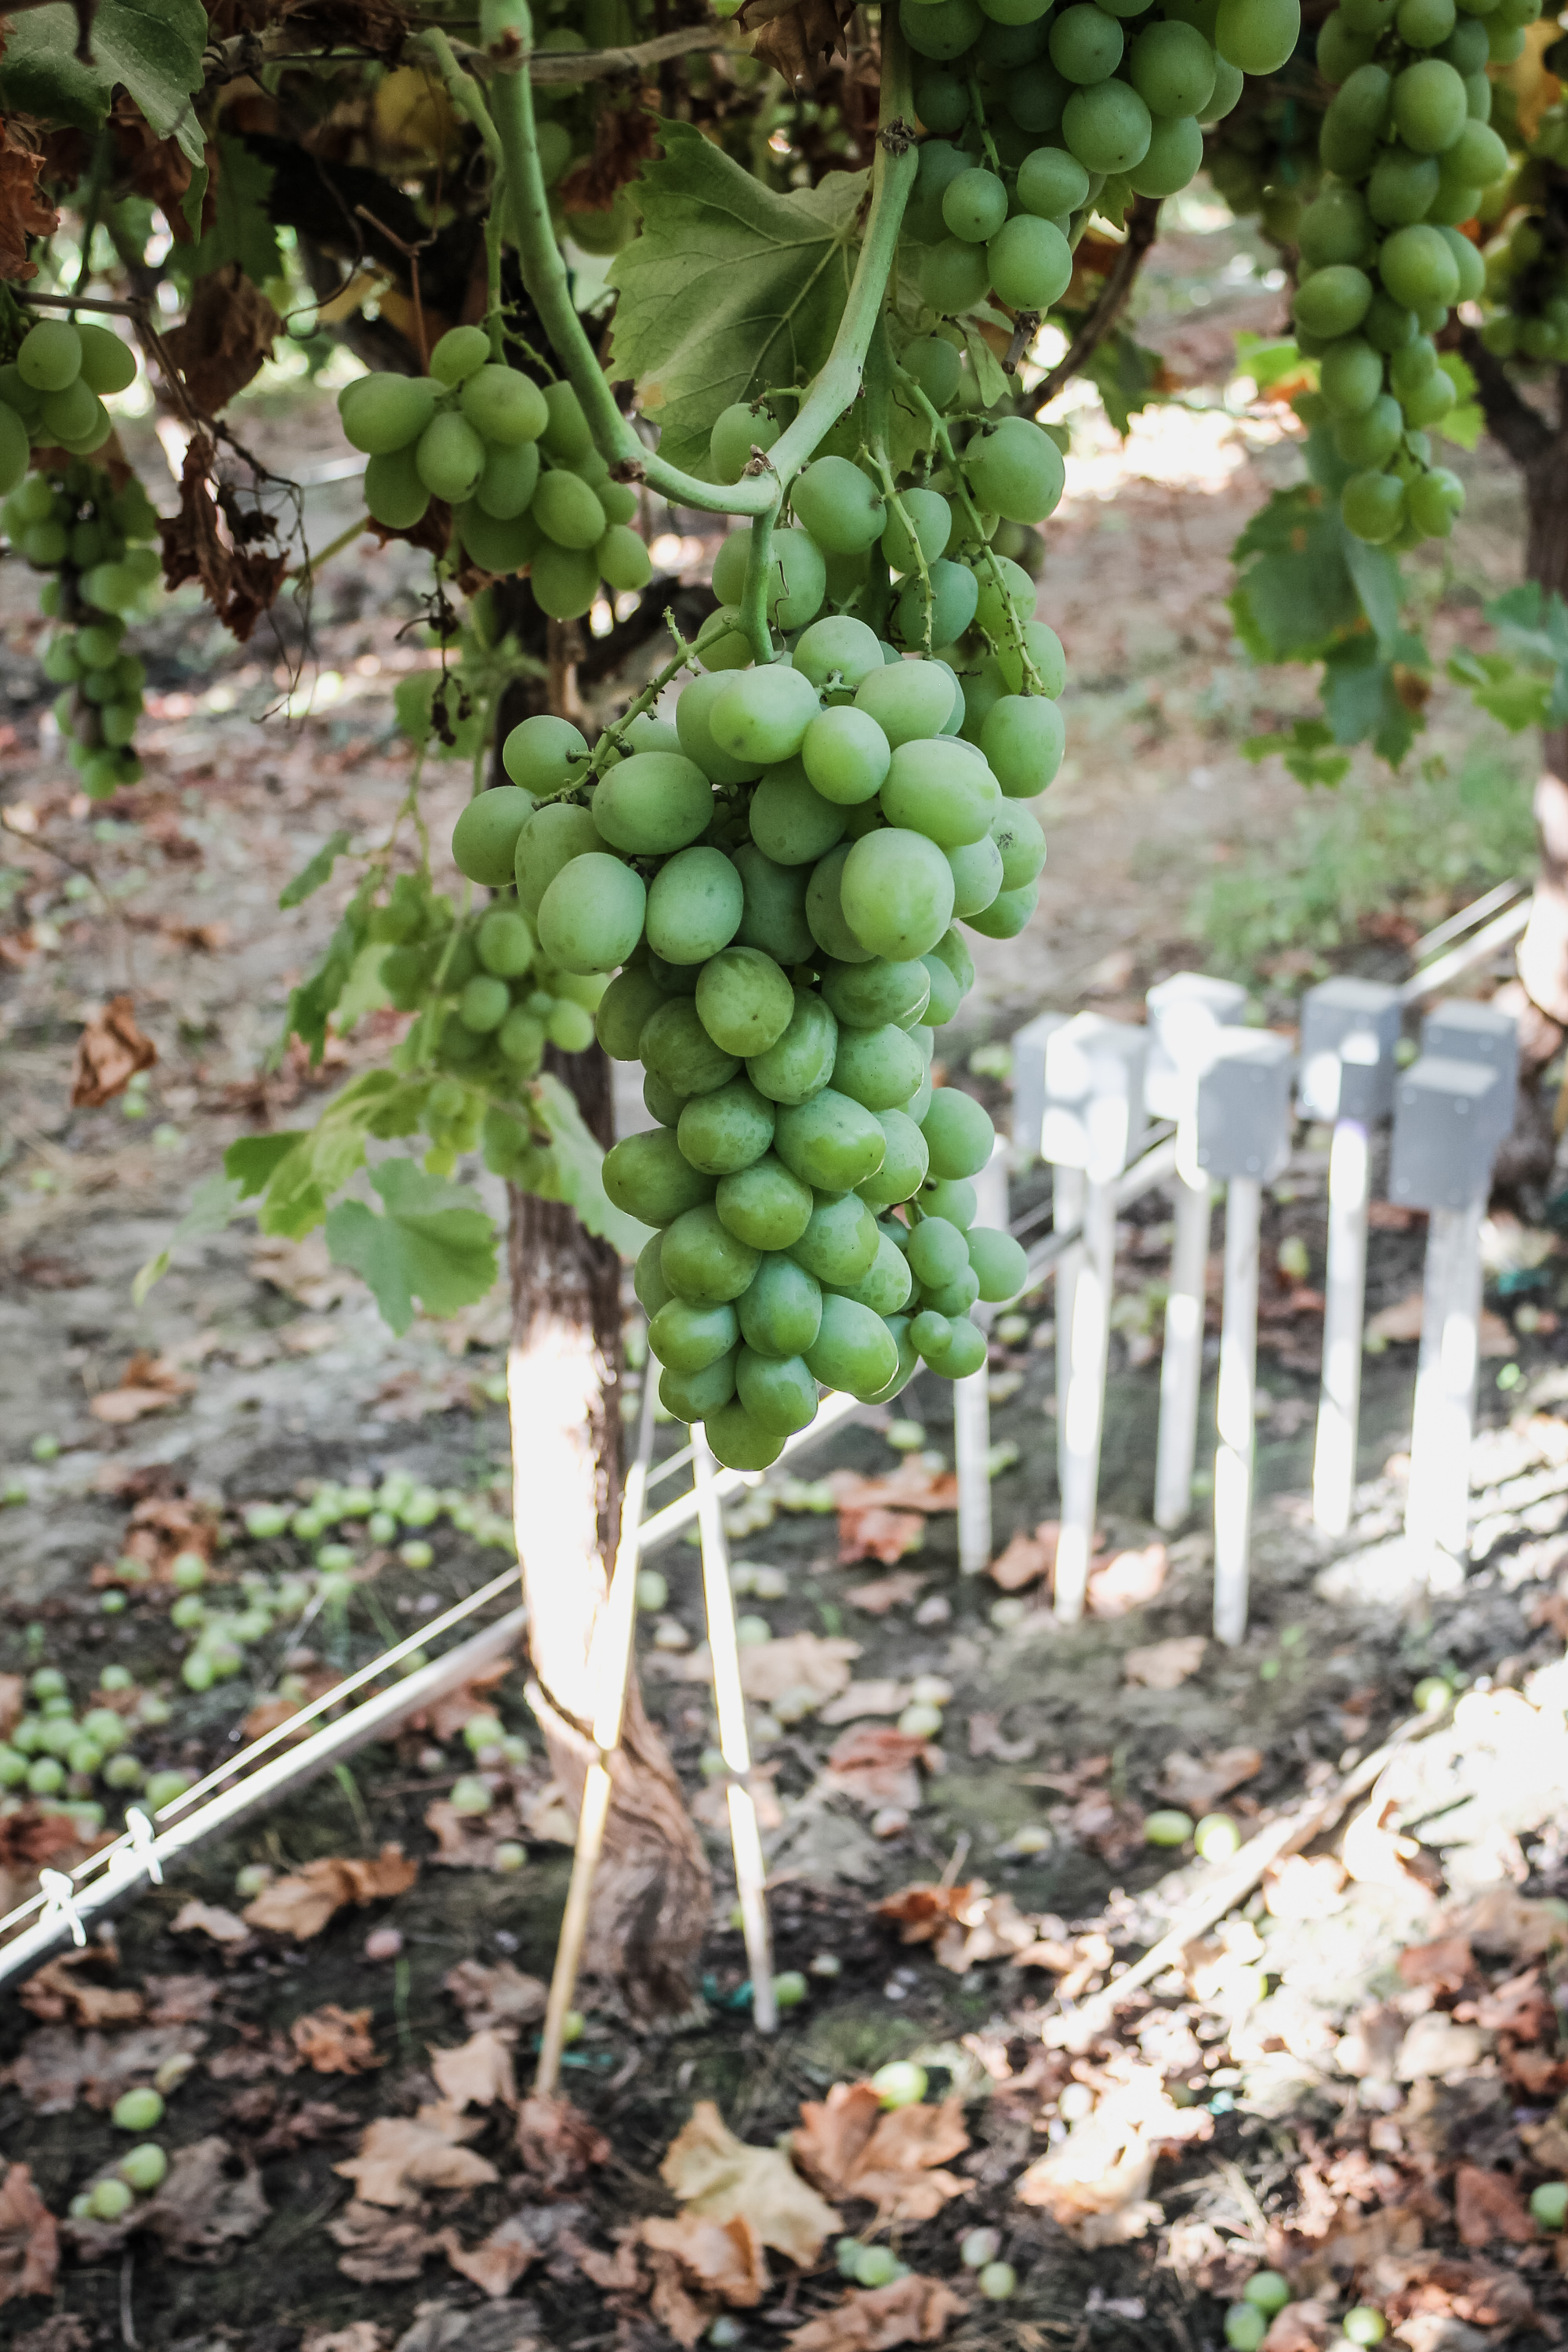 Fybr's test soil moisture sensor array monitoring grapes at multiple depths.